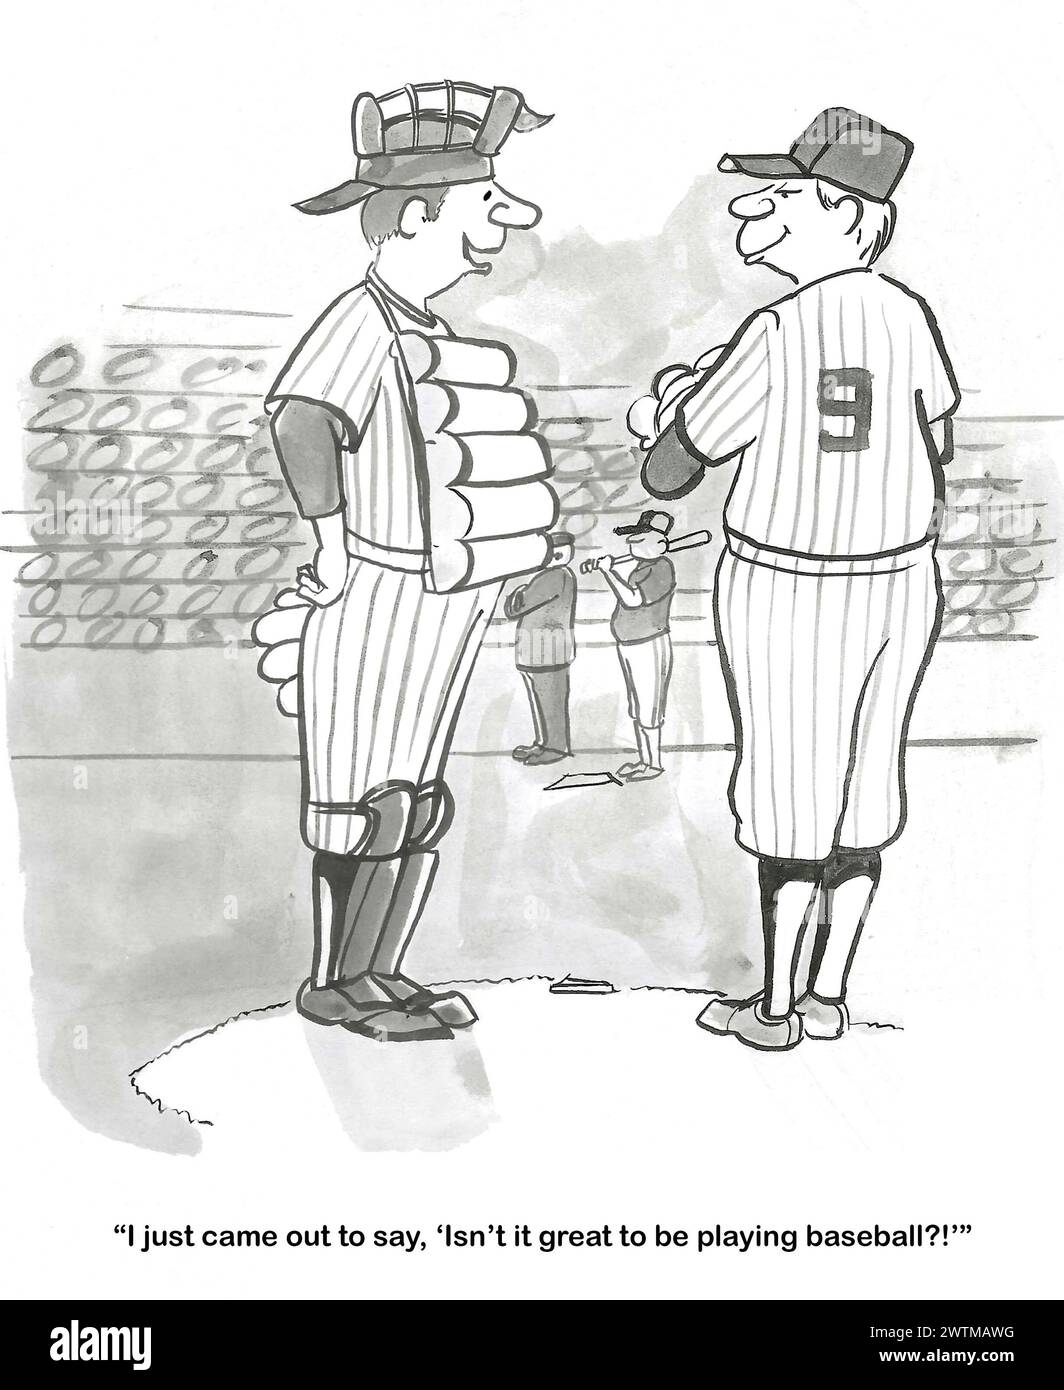 BW-Cartoon eines Baseballfängers, der sagt, wie toll Baseball ist, und im Allgemeinen mit dem Pitcher während des Spiels plaudert. Stockfoto